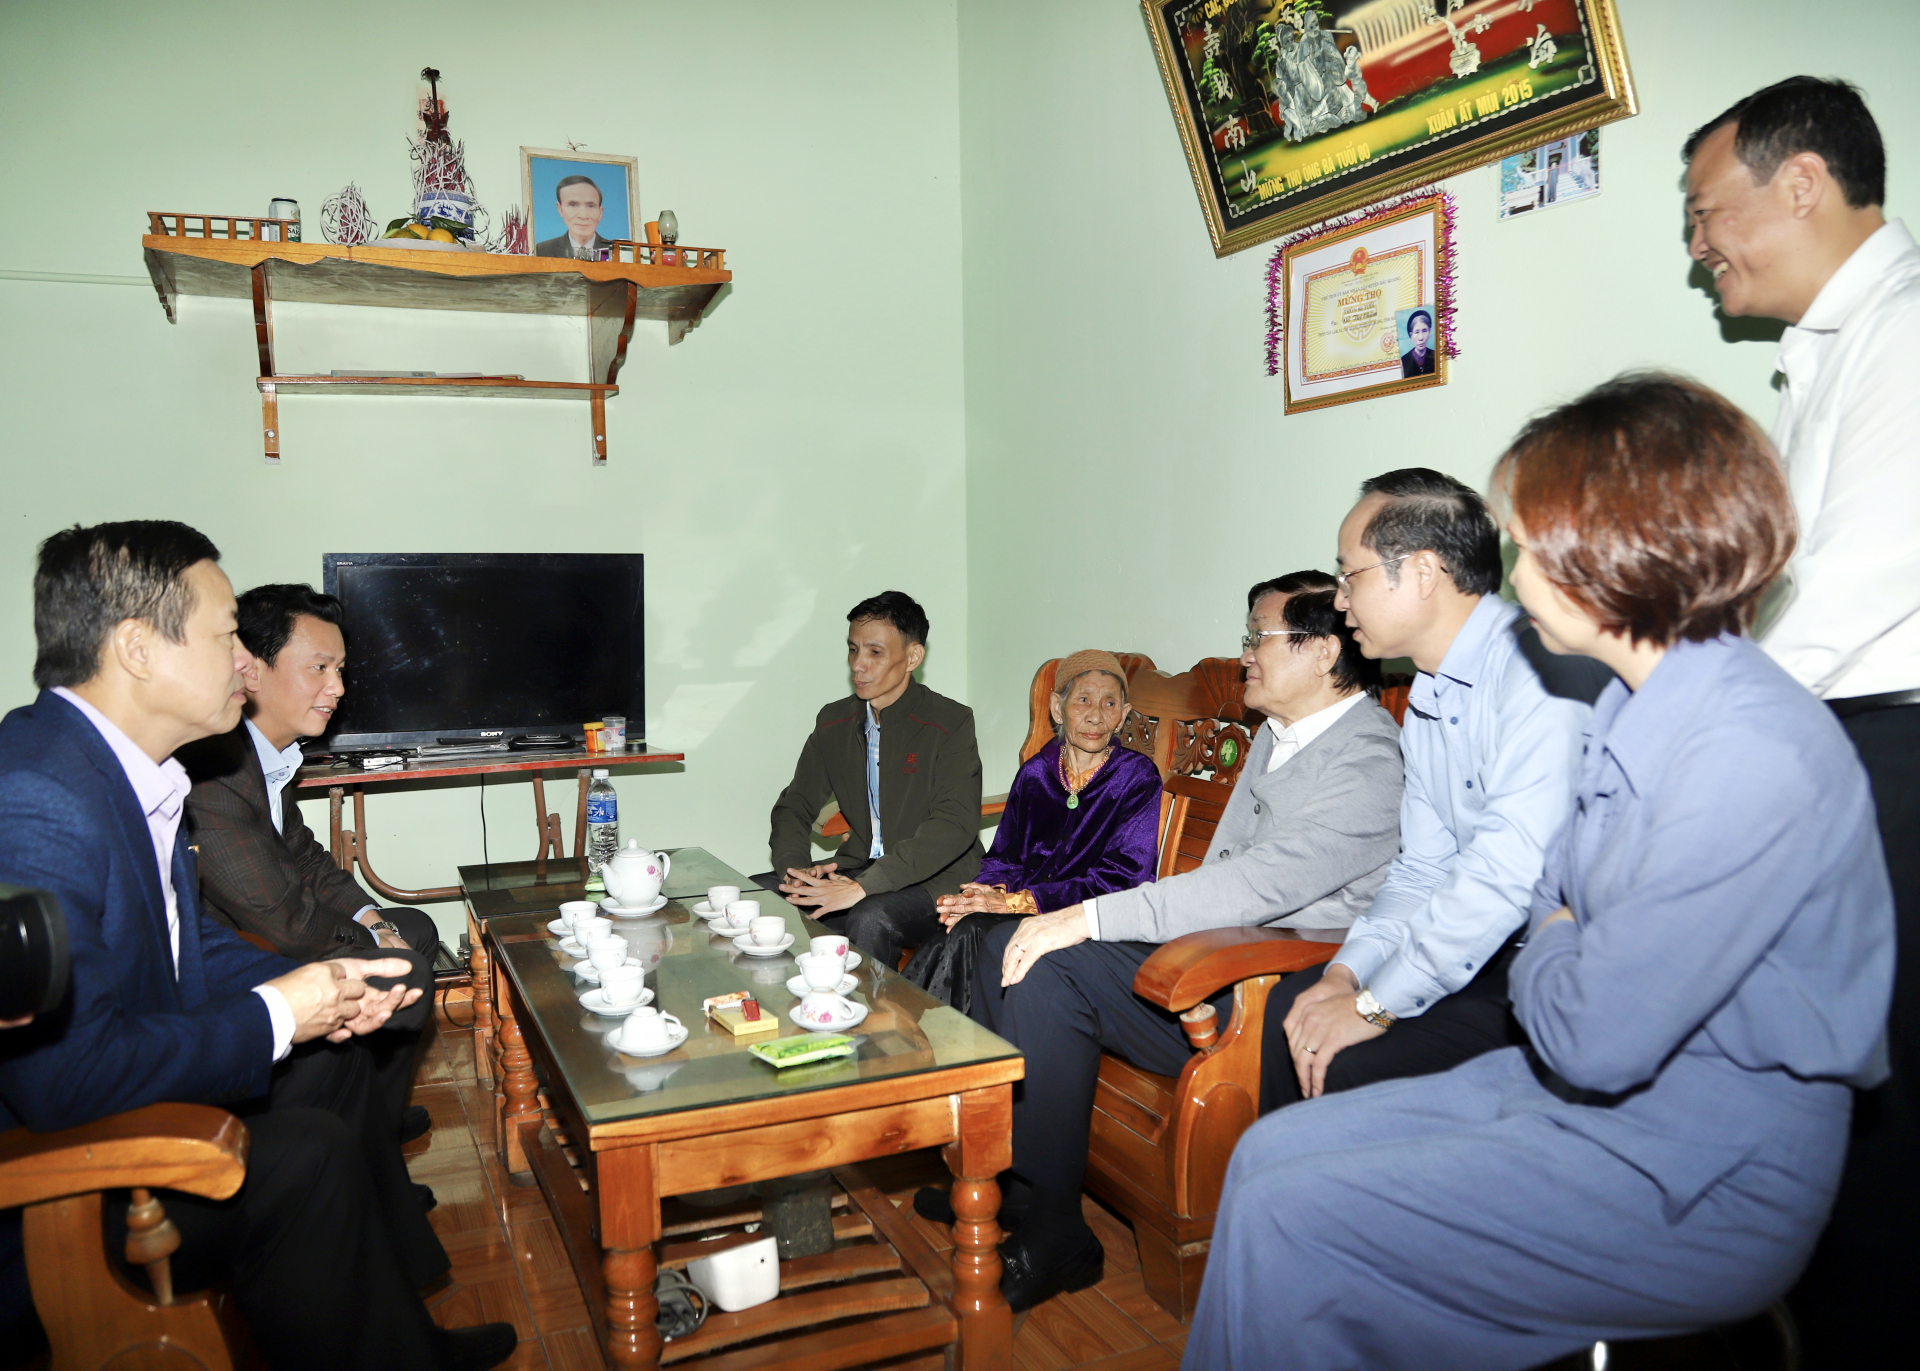 Nguyên Chủ tịch nước Trương Tấn Sang, Bí thư Tỉnh ủy Đặng Quốc Khánh và Chủ tịch UBND tỉnh Nguyễn Văn Sơn thăm quan ngôi nhà mới và trò chuyện với bà Đỗ Thị Châm